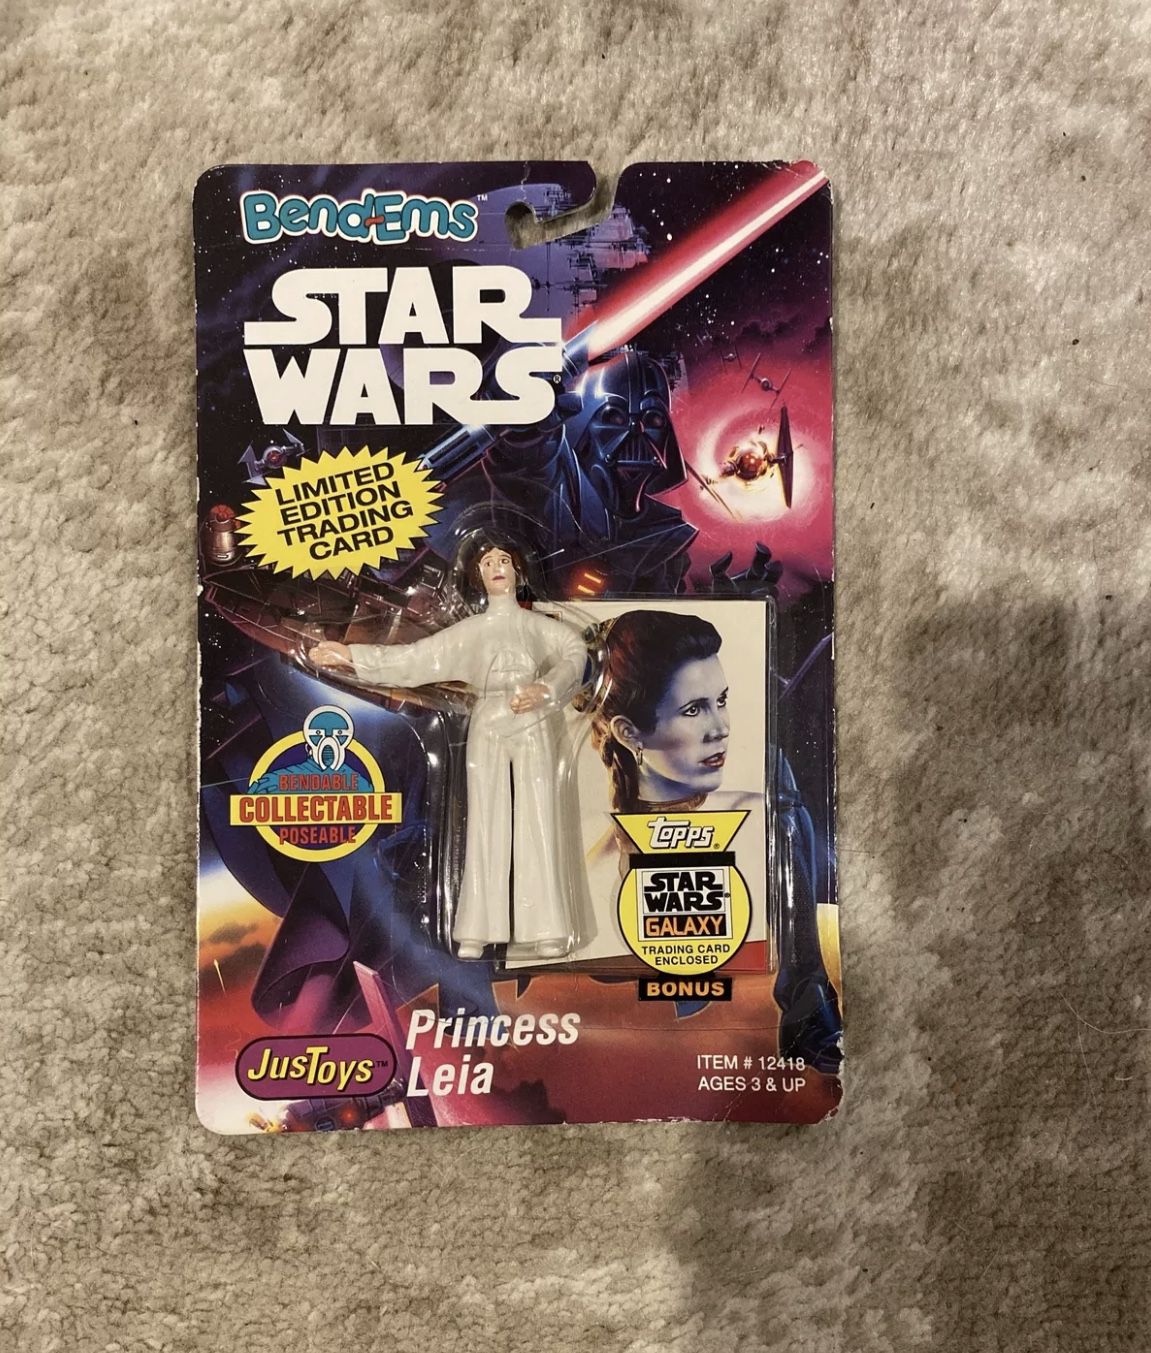 Star Wars Bend-Ems Princess Leia Figure